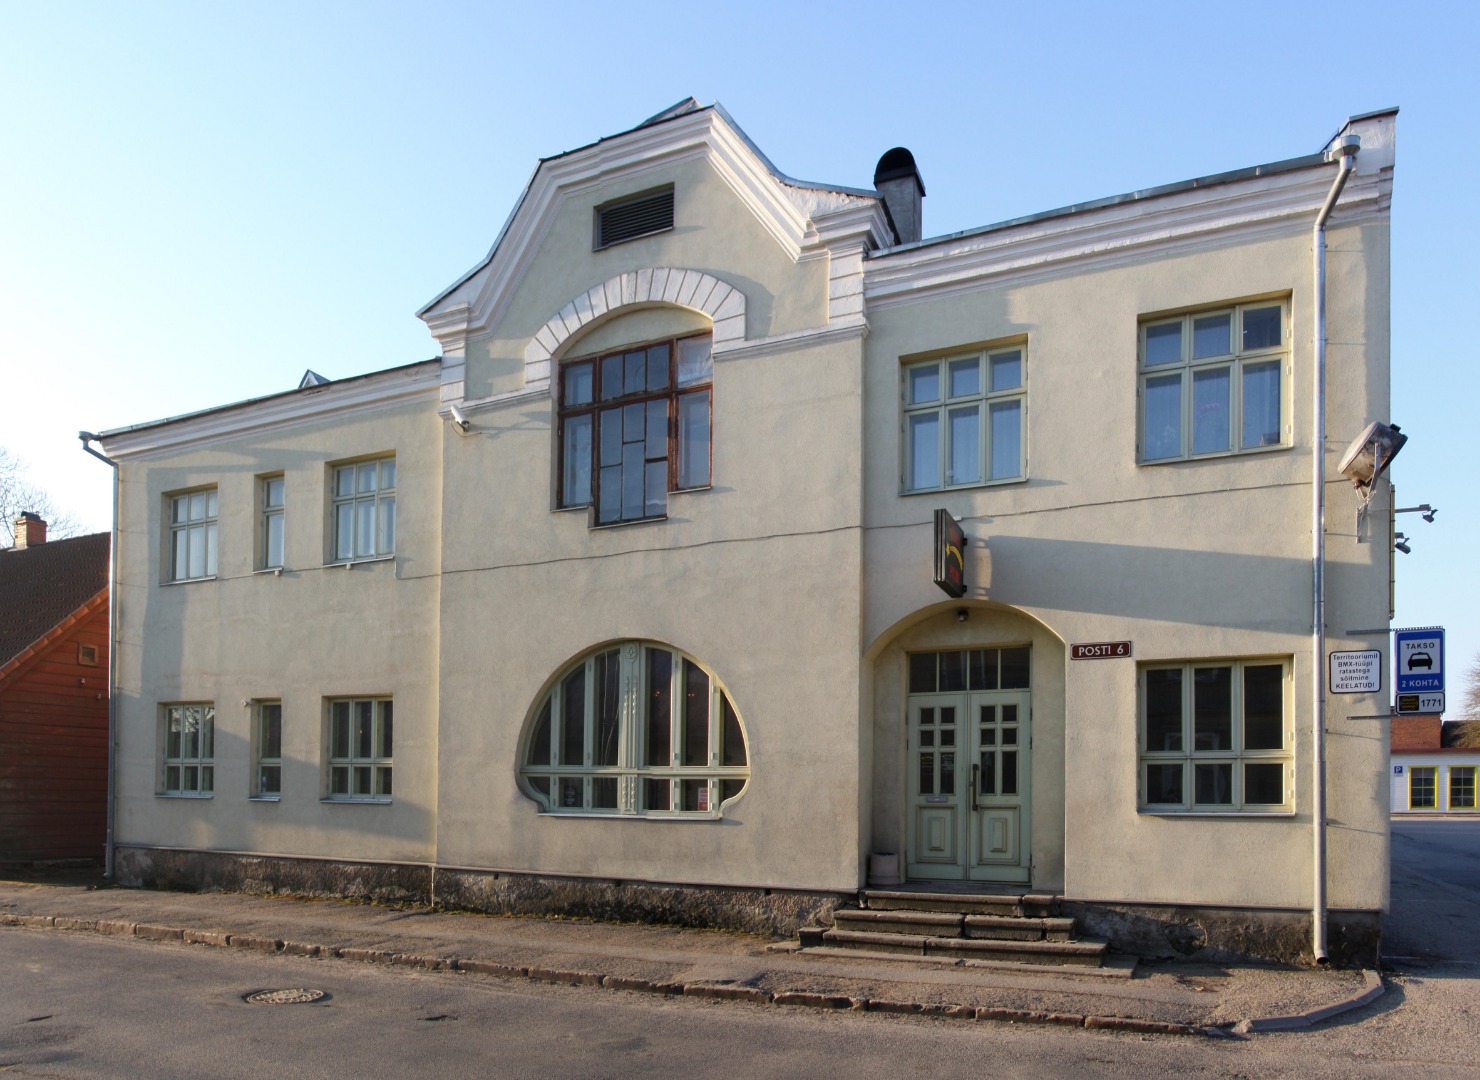 foto Viljandi Käsitööliste Abiandmise Seltsi hoone Posti tn 6 u 1920 foto J. Riet rephoto